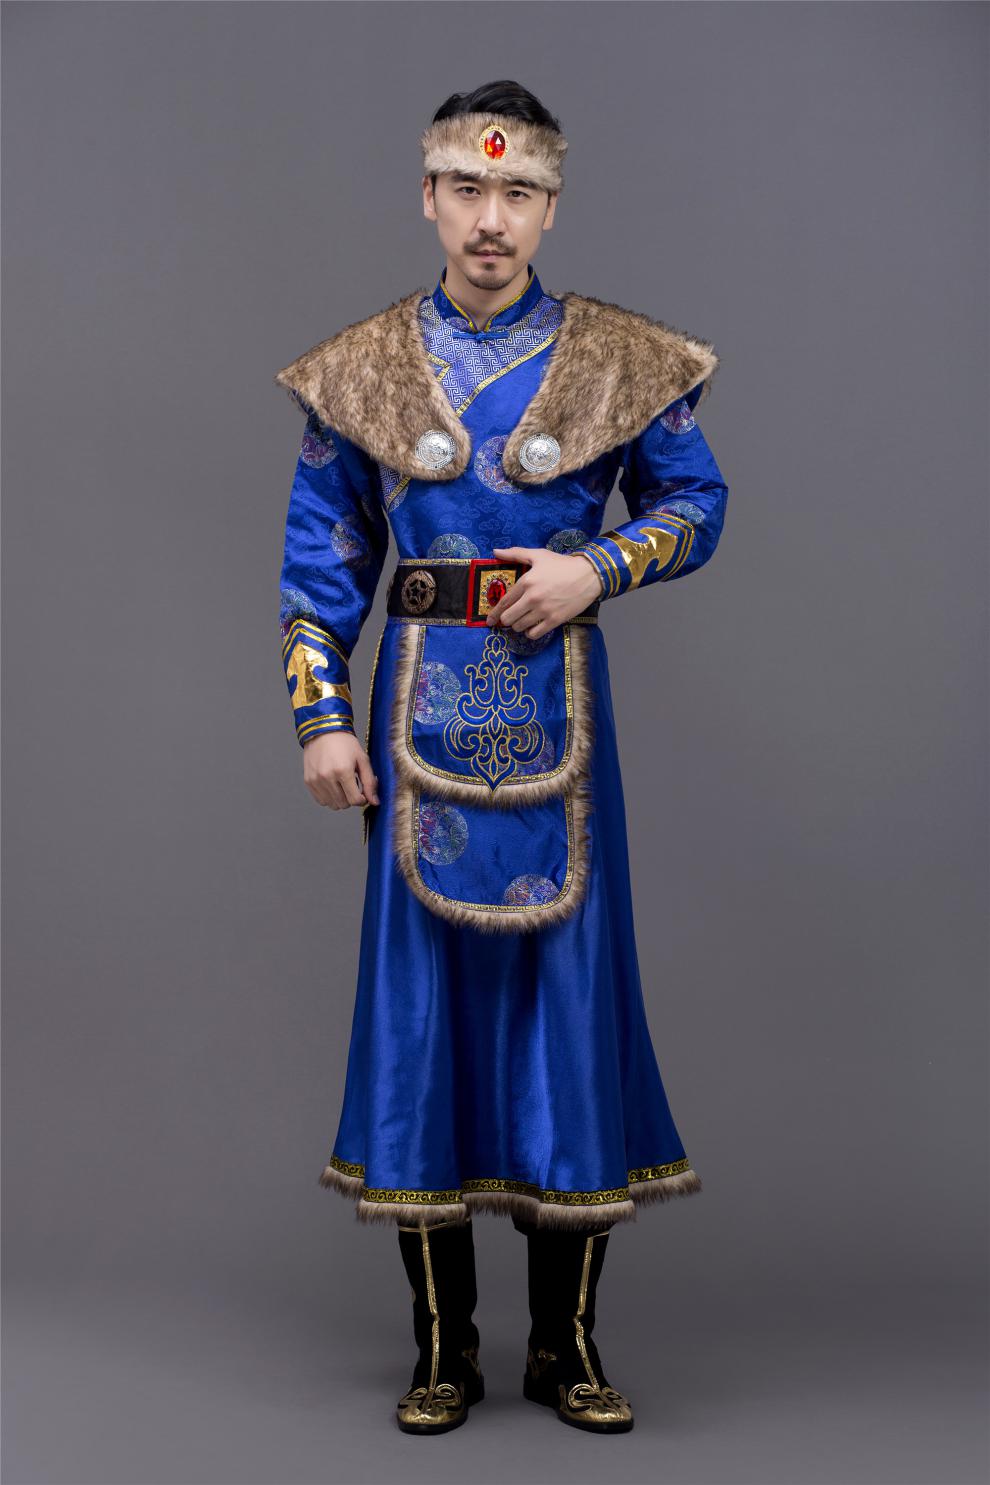 蒙古袍子男人图片